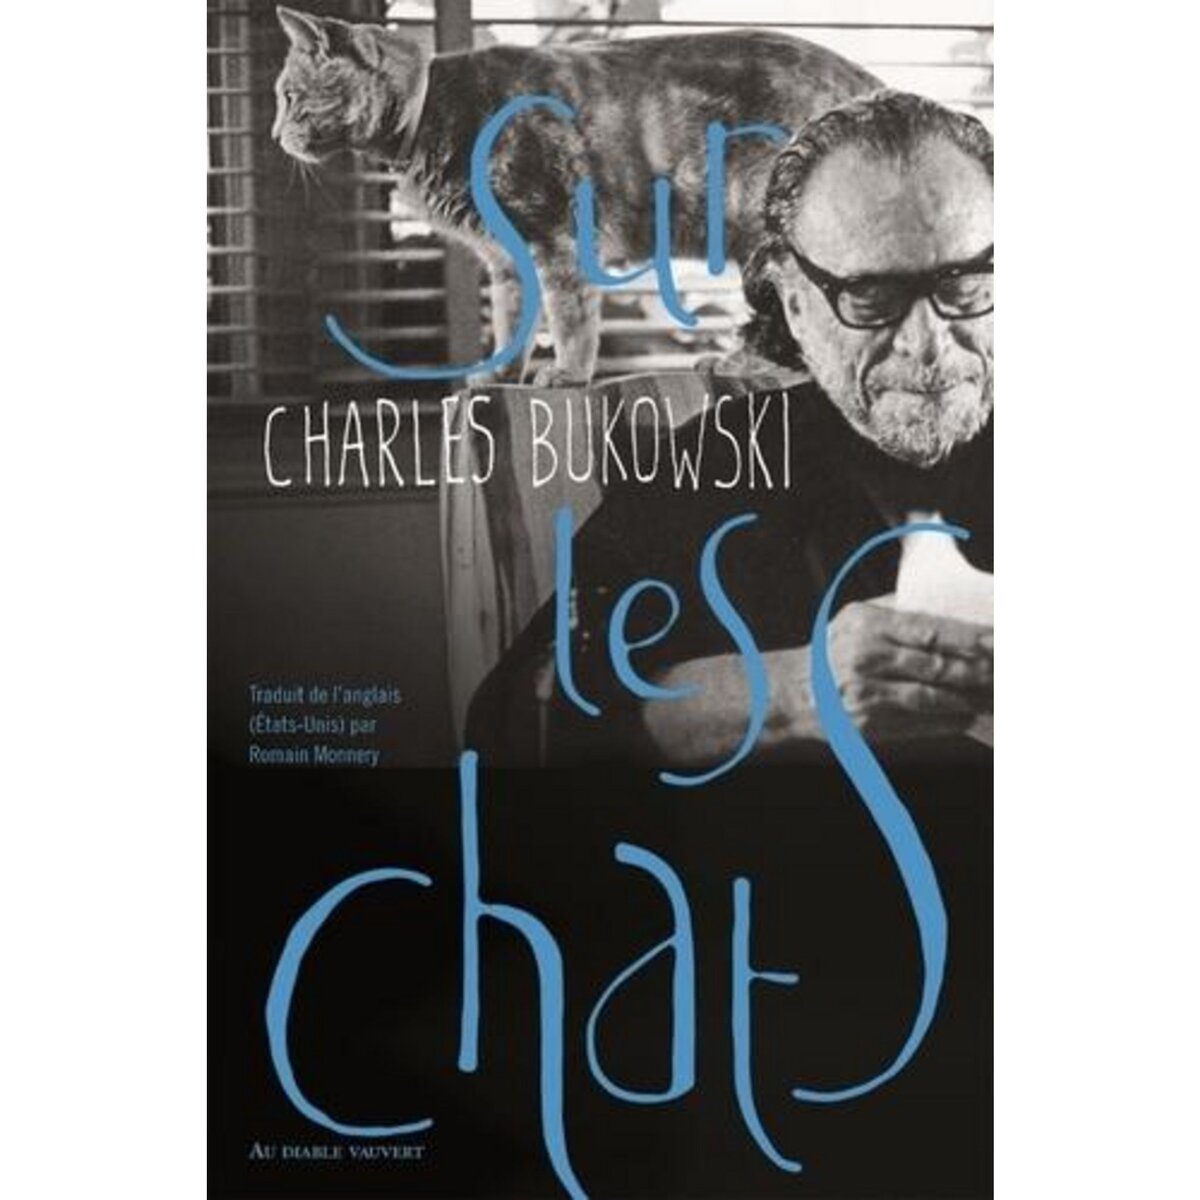  SUR LES CHATS, Bukowski Charles